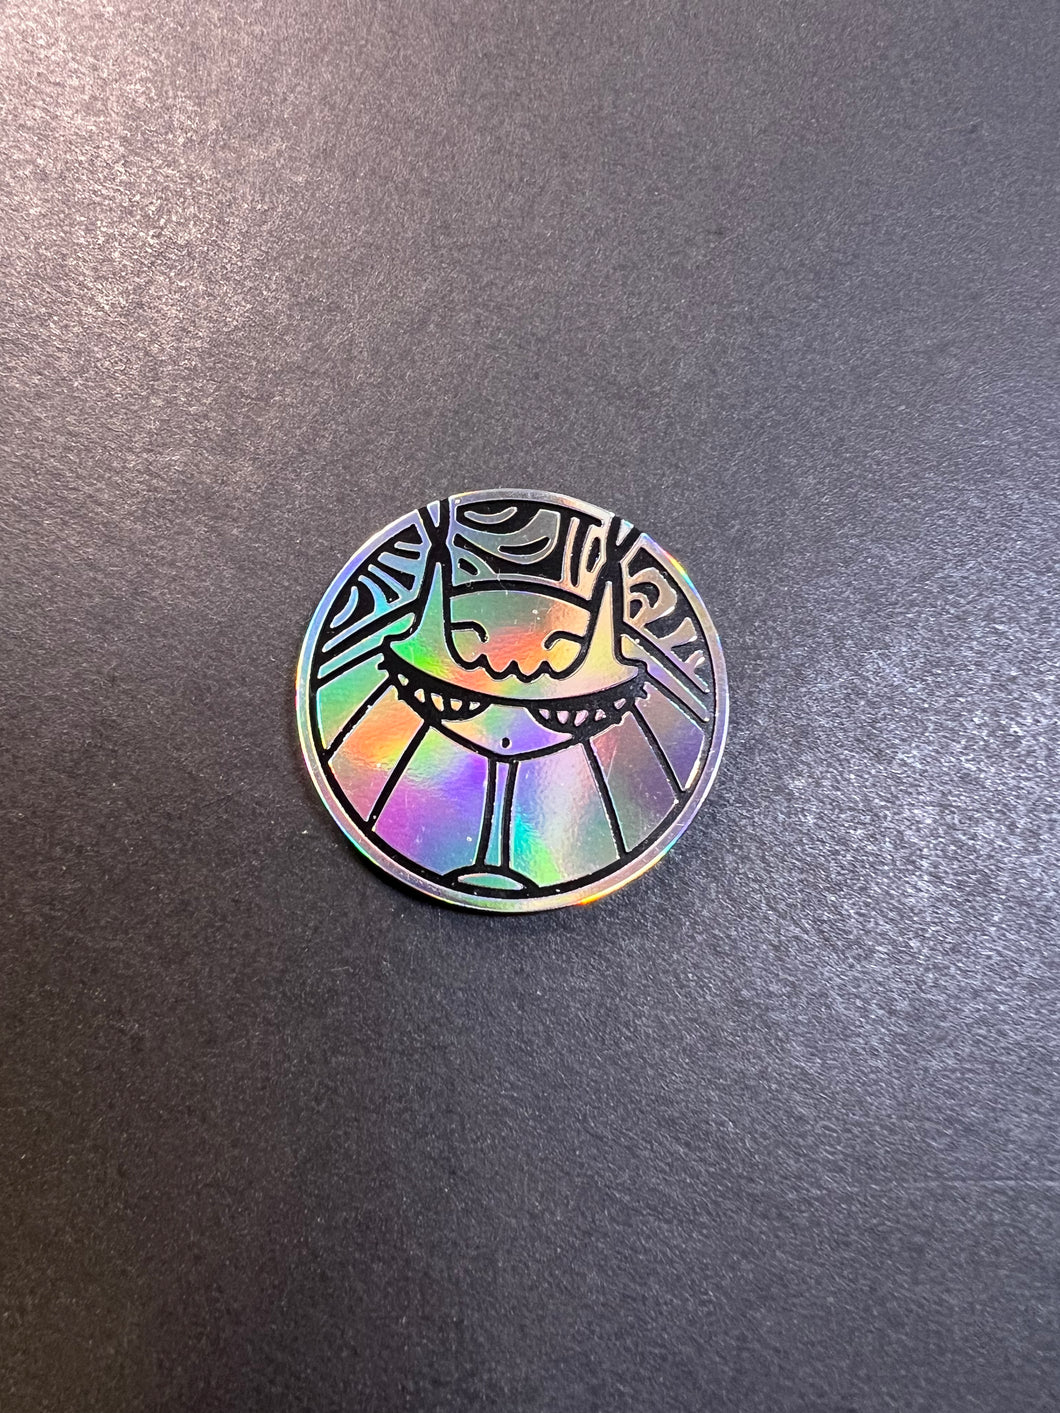 Official Pheromosa Pokemon Coin - Silver